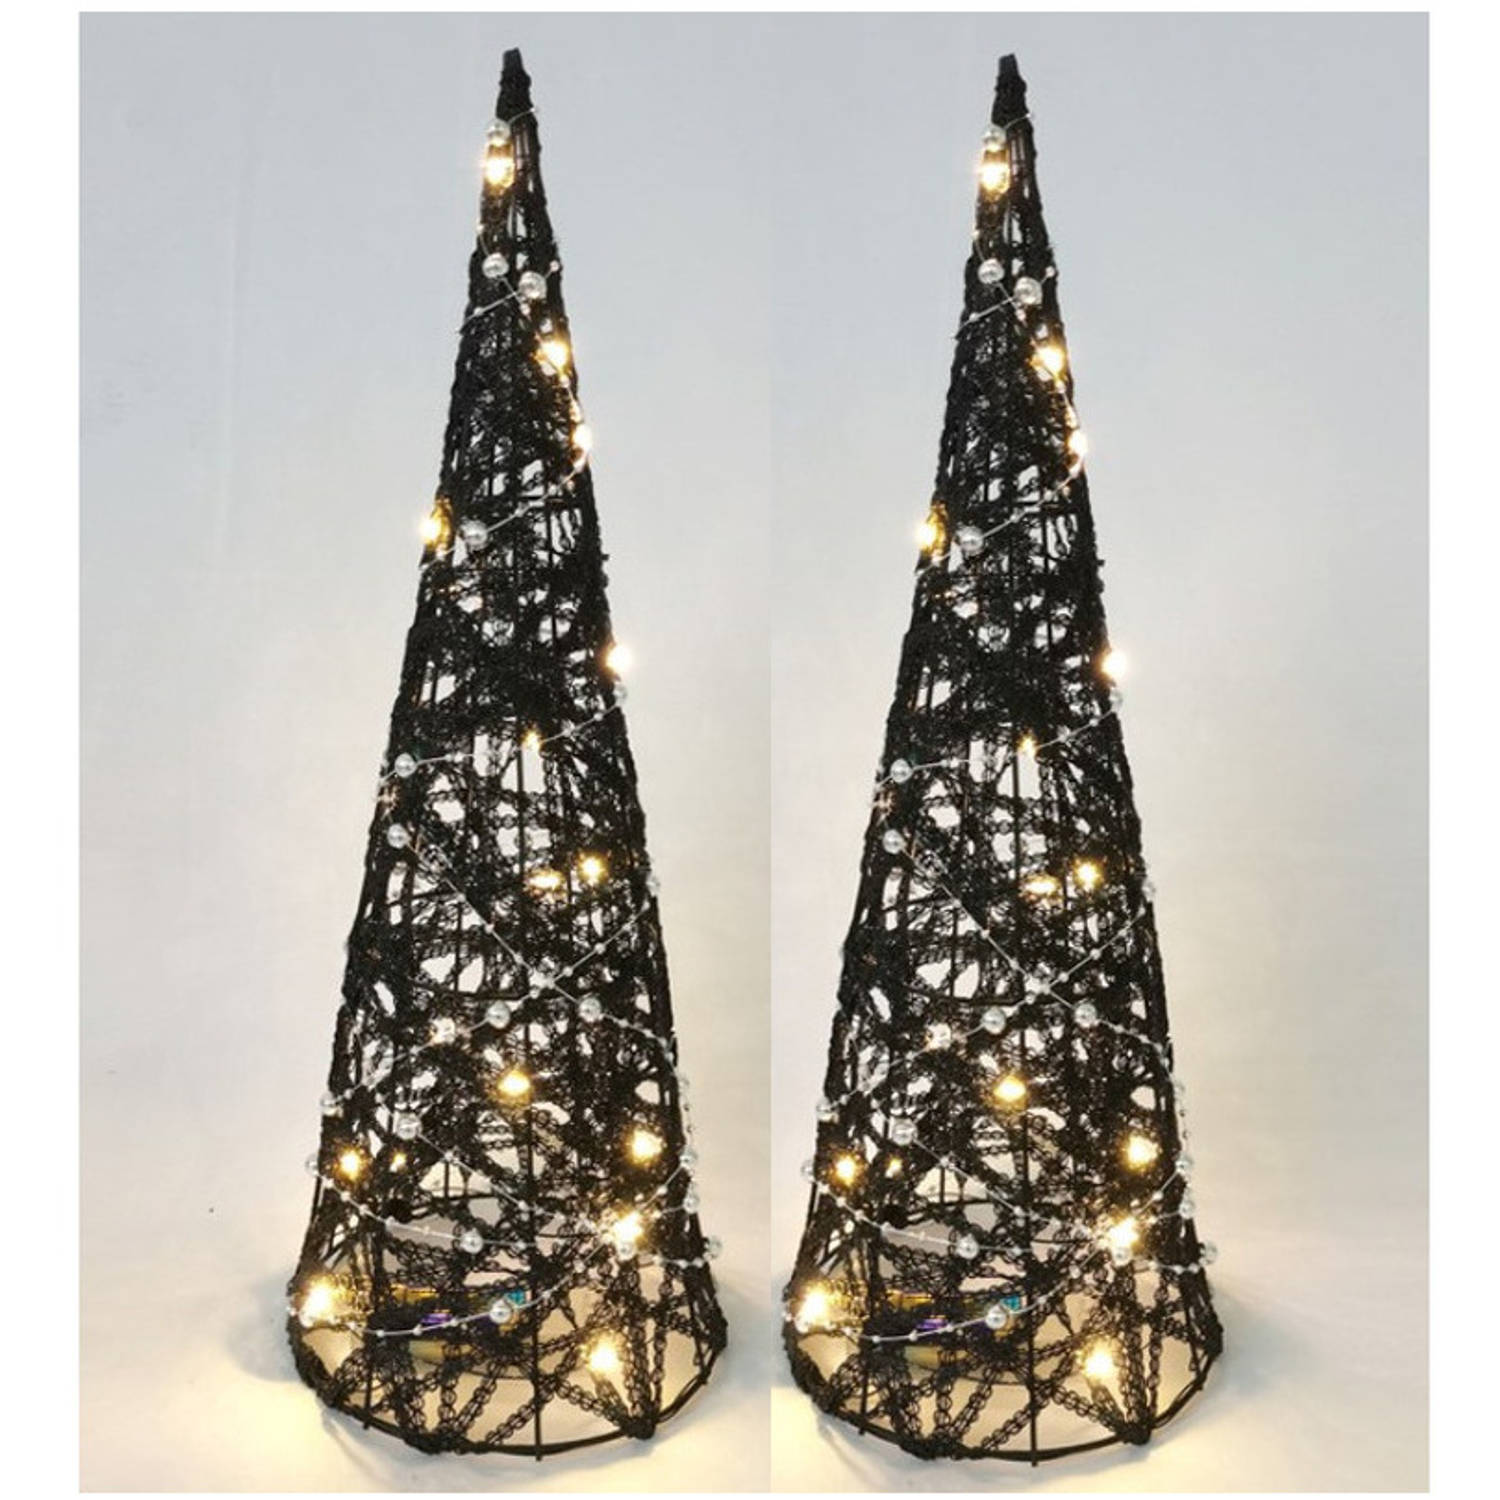 LED piramide kerstboom -2x - H40 cm - zwart - rotan - kerstverlichting - kerstverlichting figuur